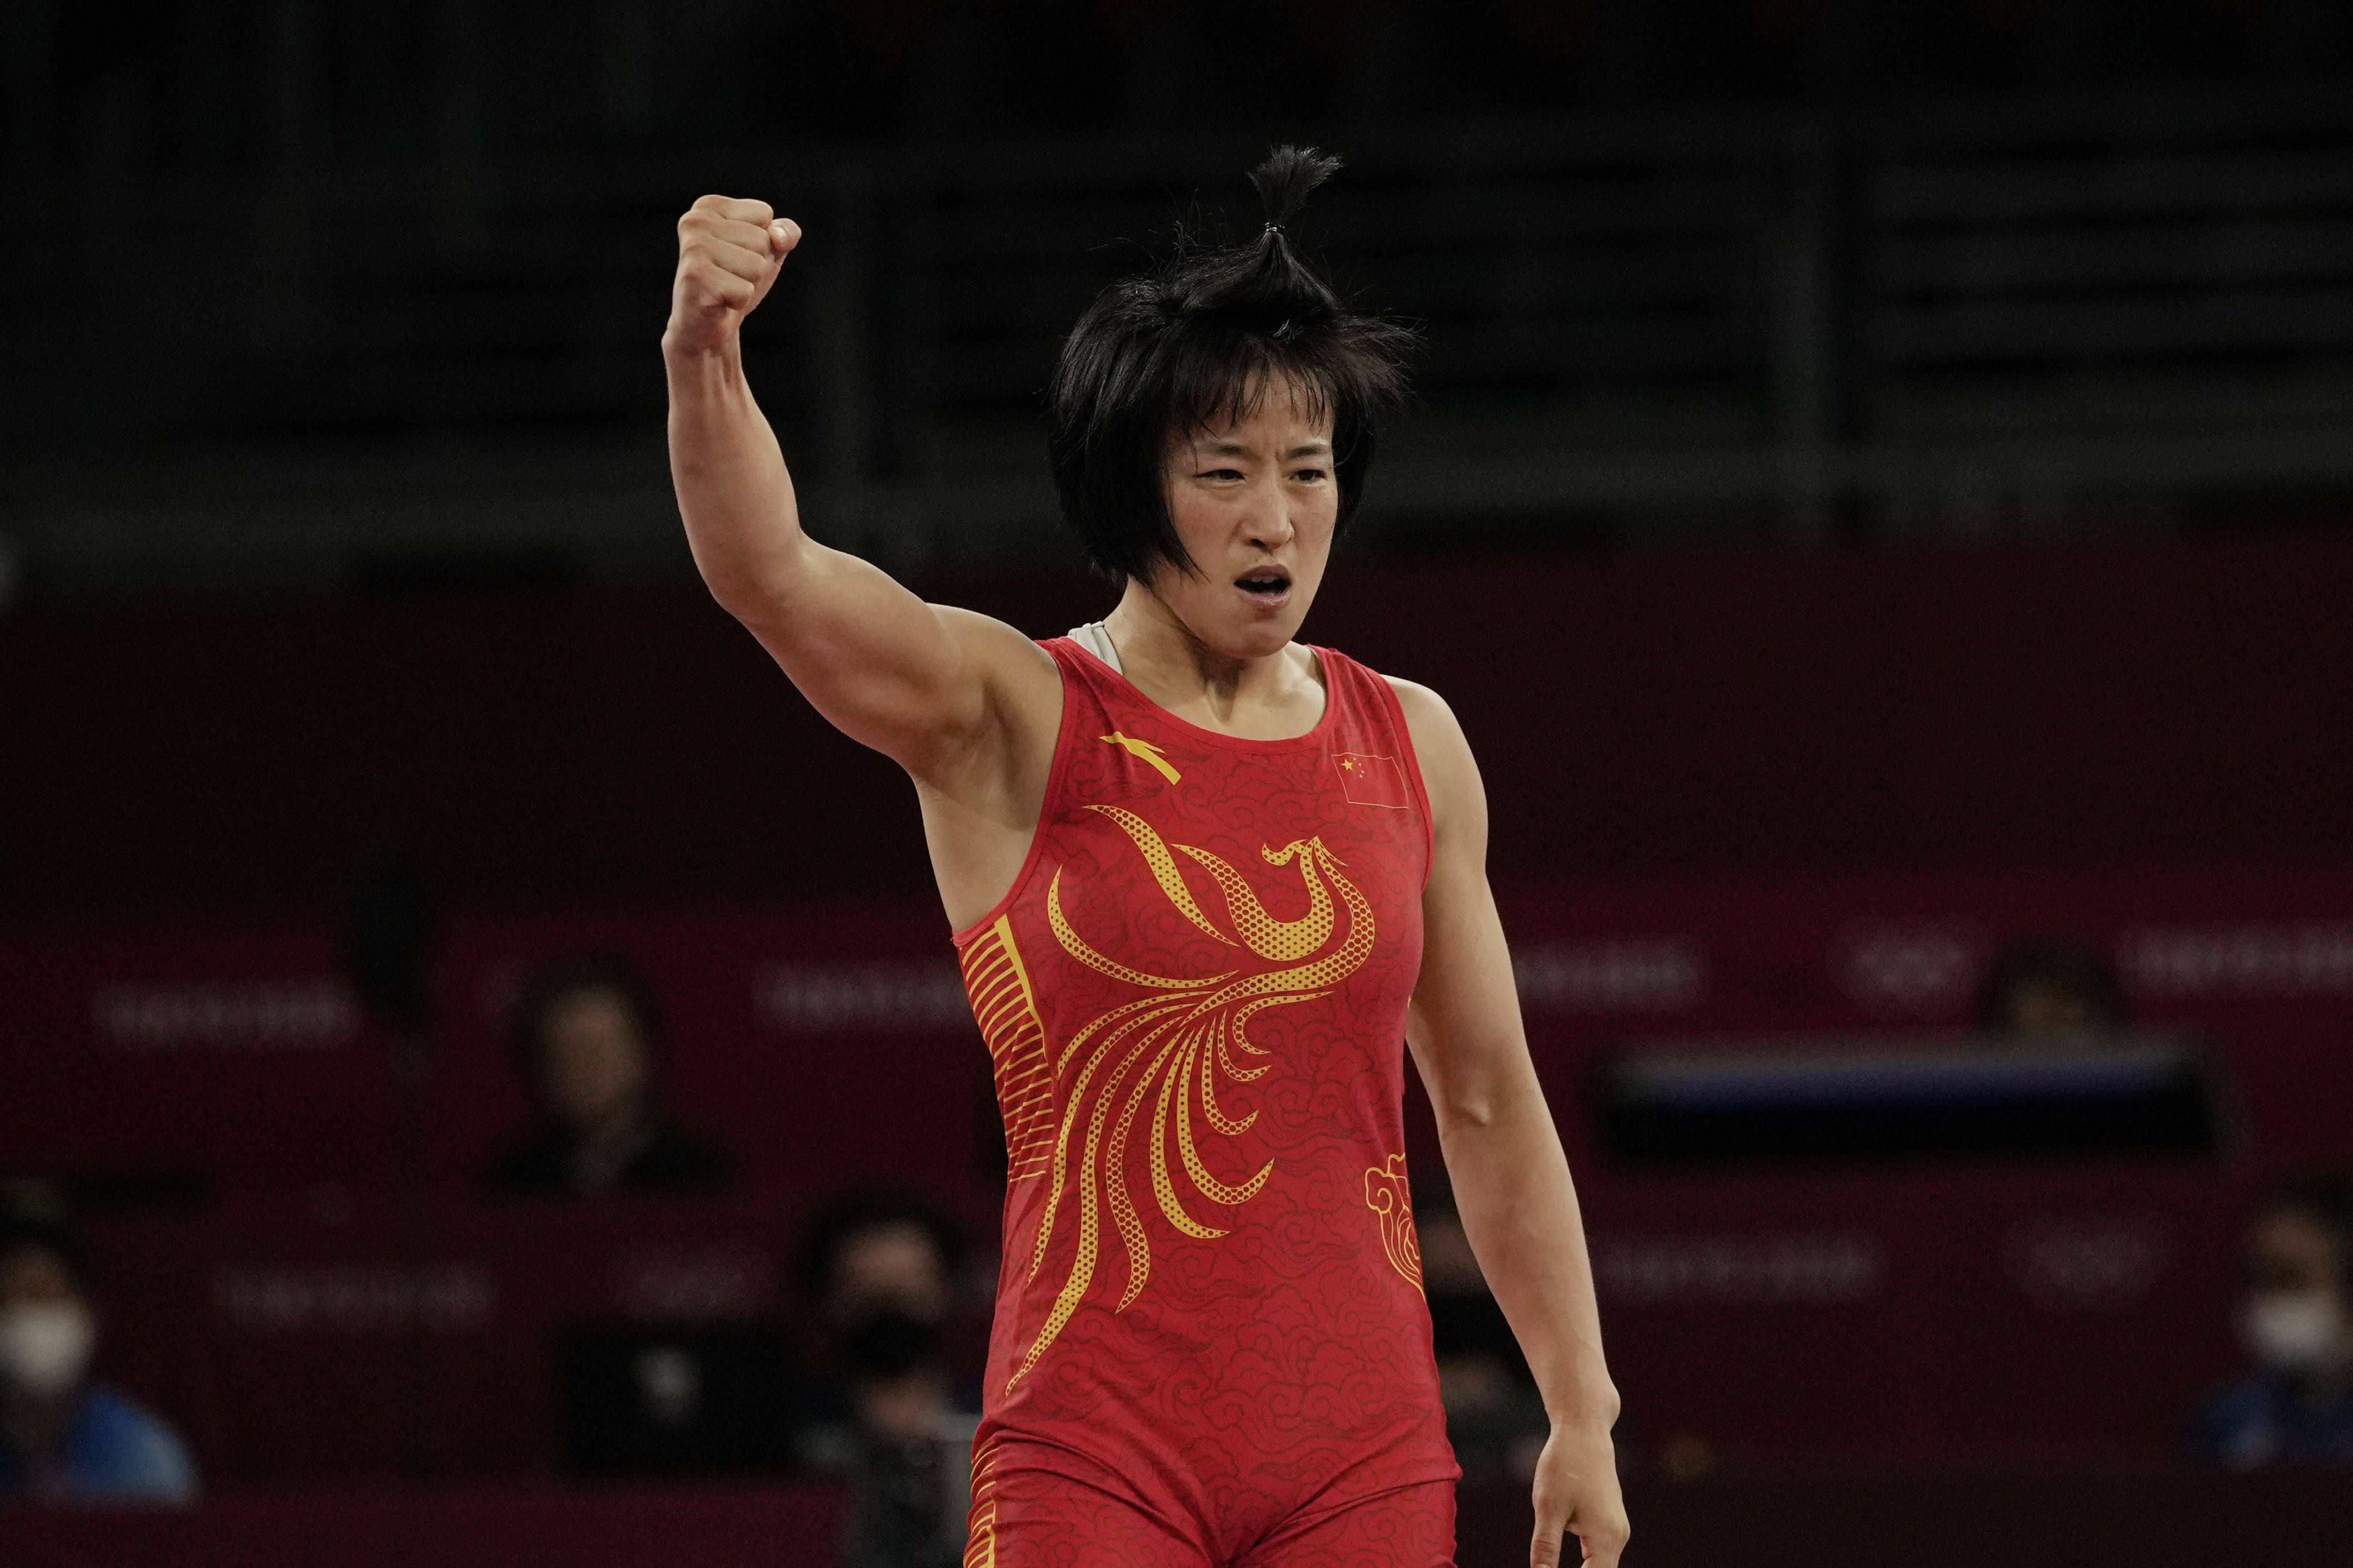 8月6日的女子自由式摔跤50公斤级半决赛中,中国选手孙亚楠就让我们